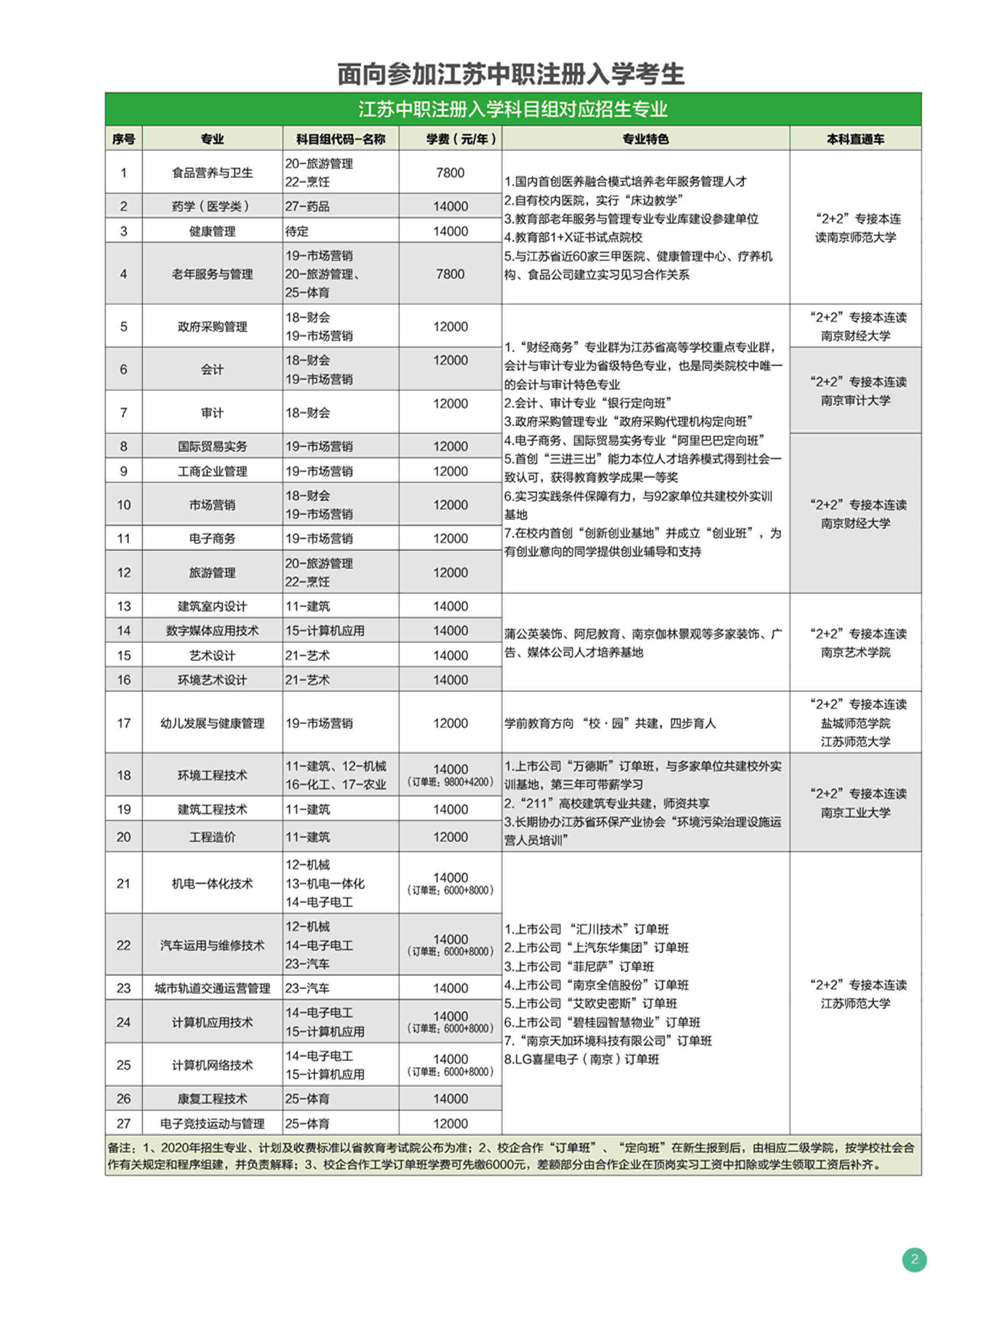 钟山职业技术学院2020年招生简章3.jpg